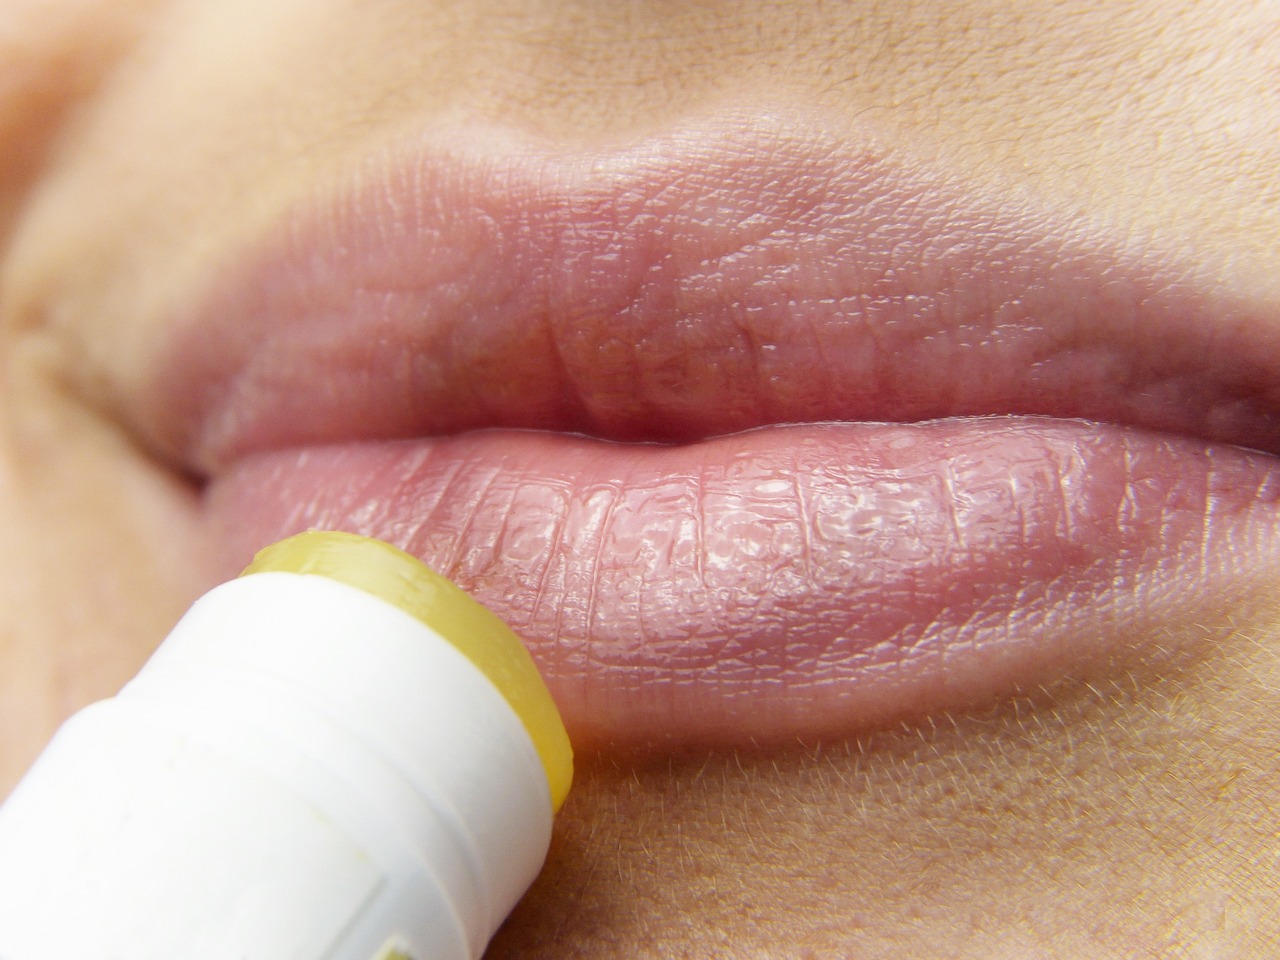 ¿Qué es y para qué sirve un bálsamo labial?